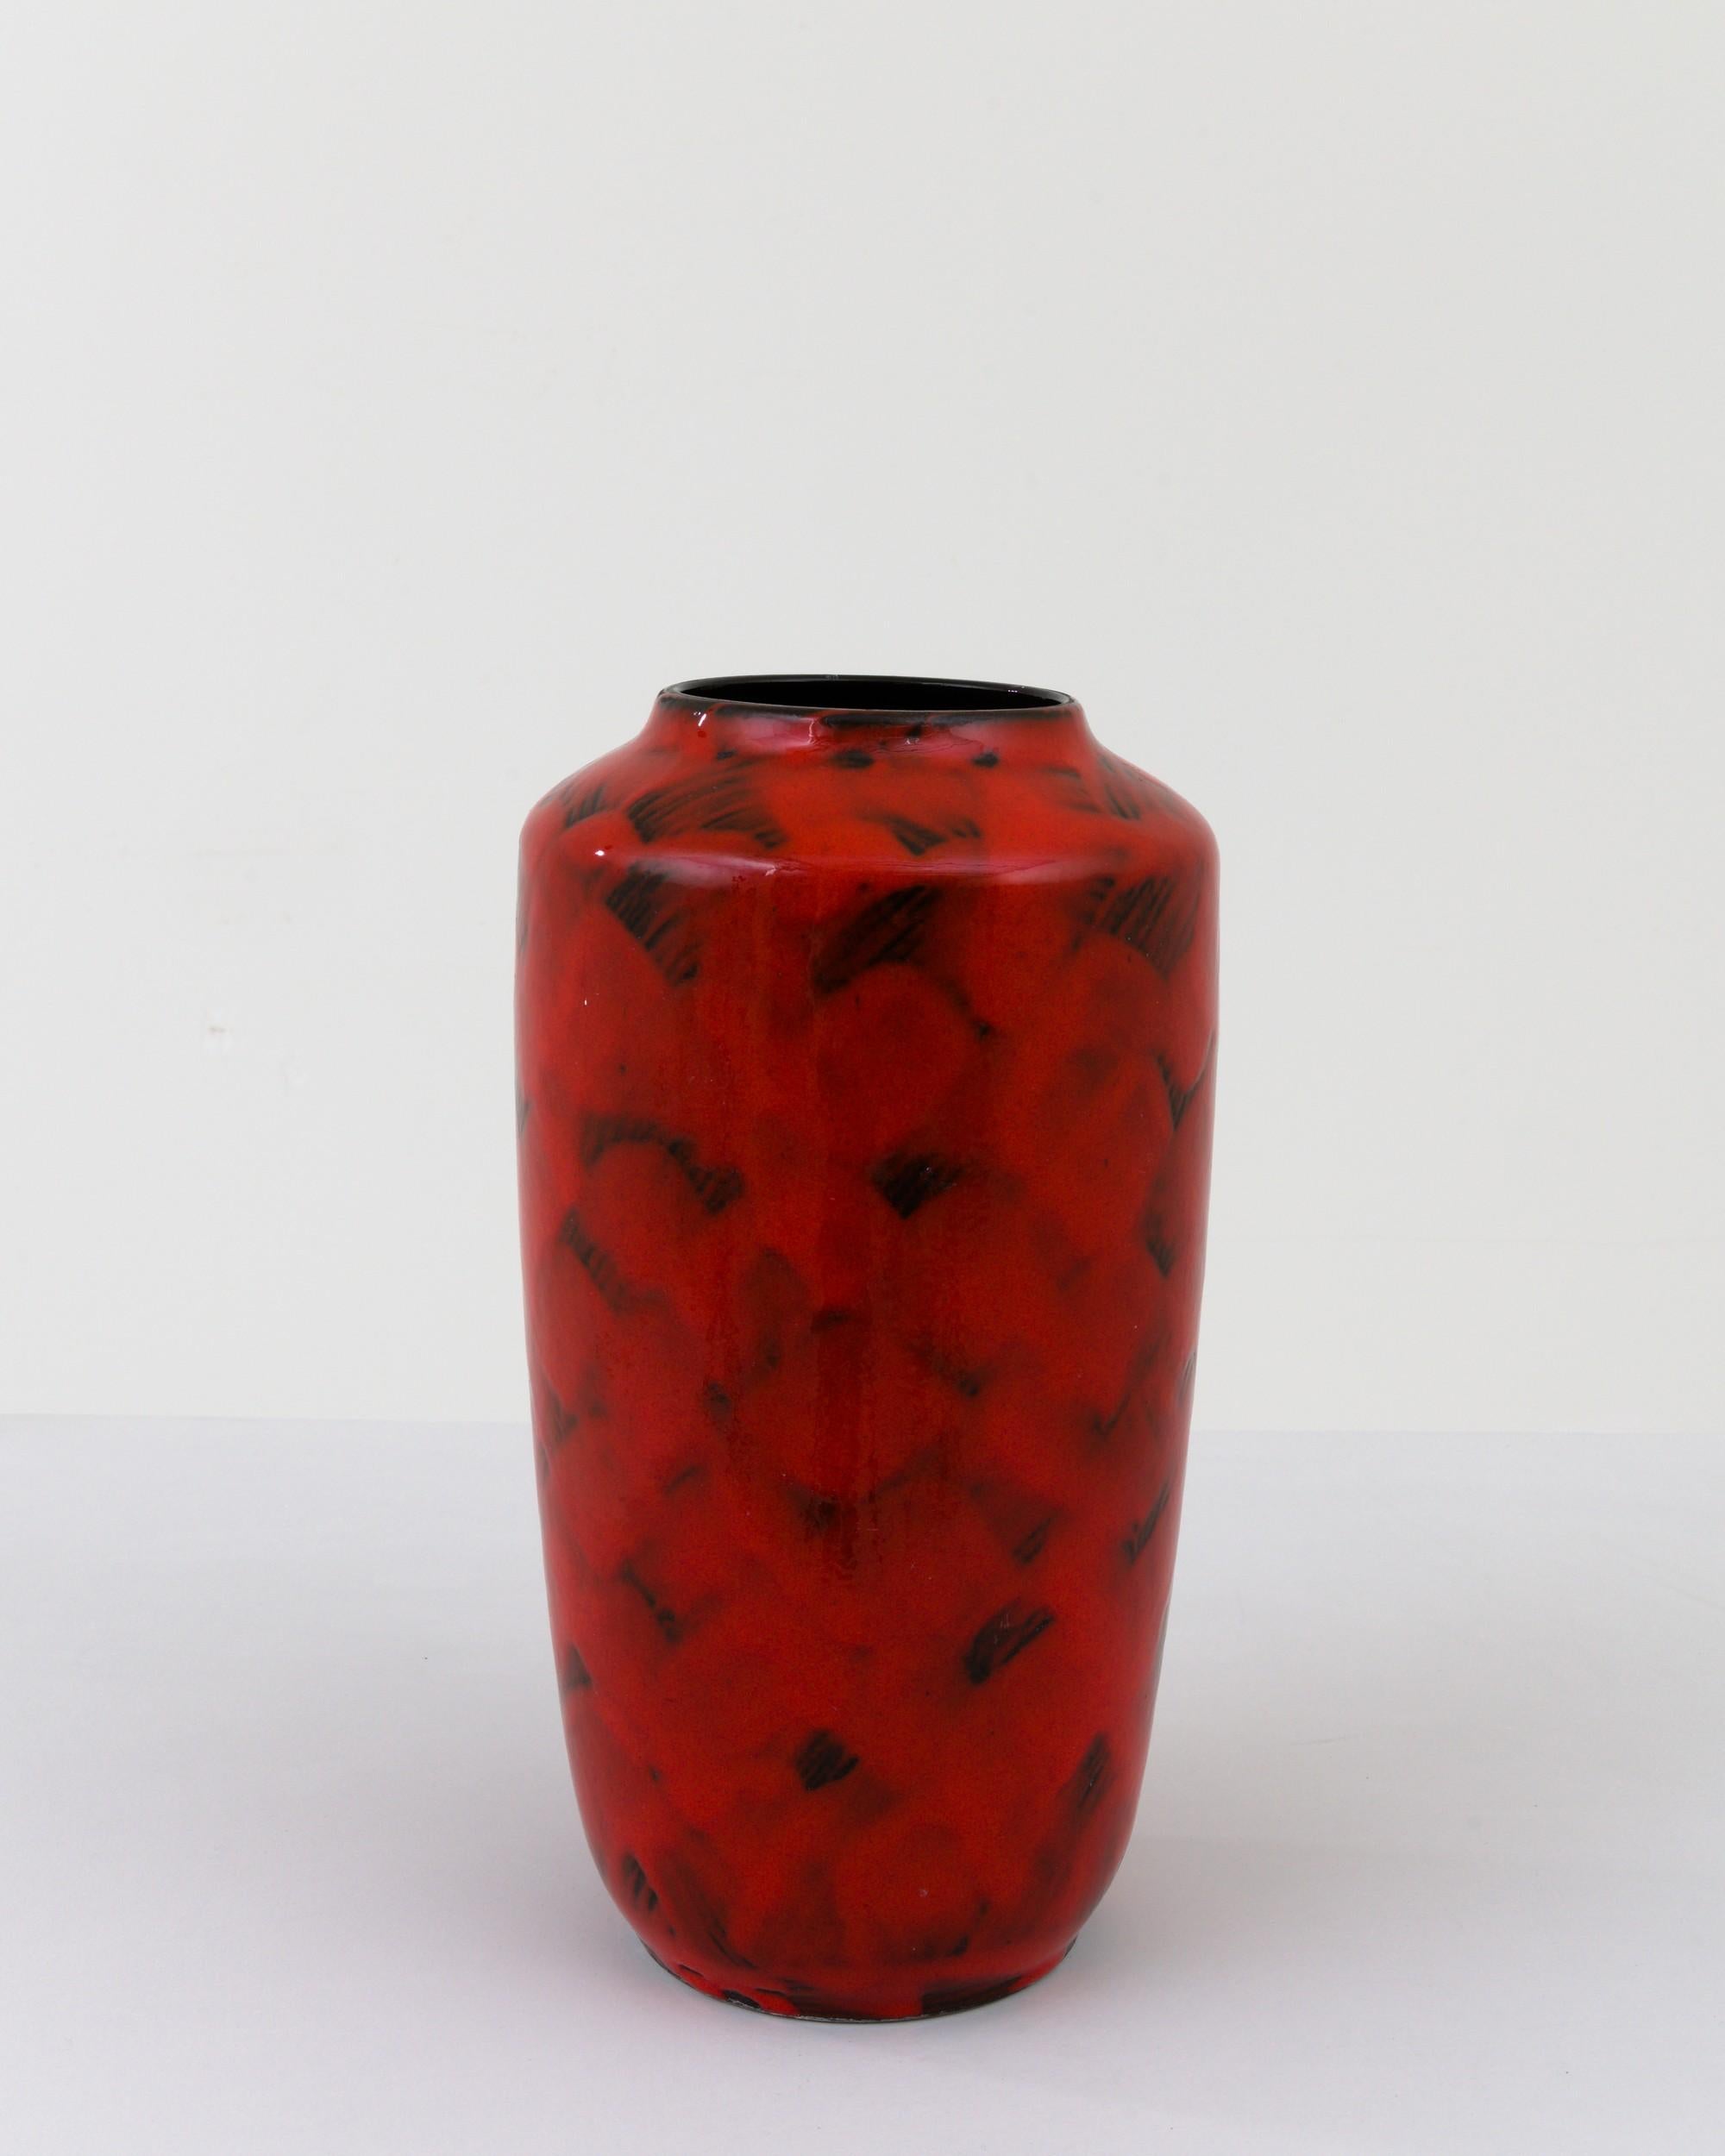 Vase en céramique datant du milieu du XXe siècle en Allemagne. Ni grand ni petit, ce pot fabriqué en Studio reflète la main et le fait main ; la tactilité du processus et la vision de l'artiste - réalisée sur le tour du potier. Les coups de pinceau